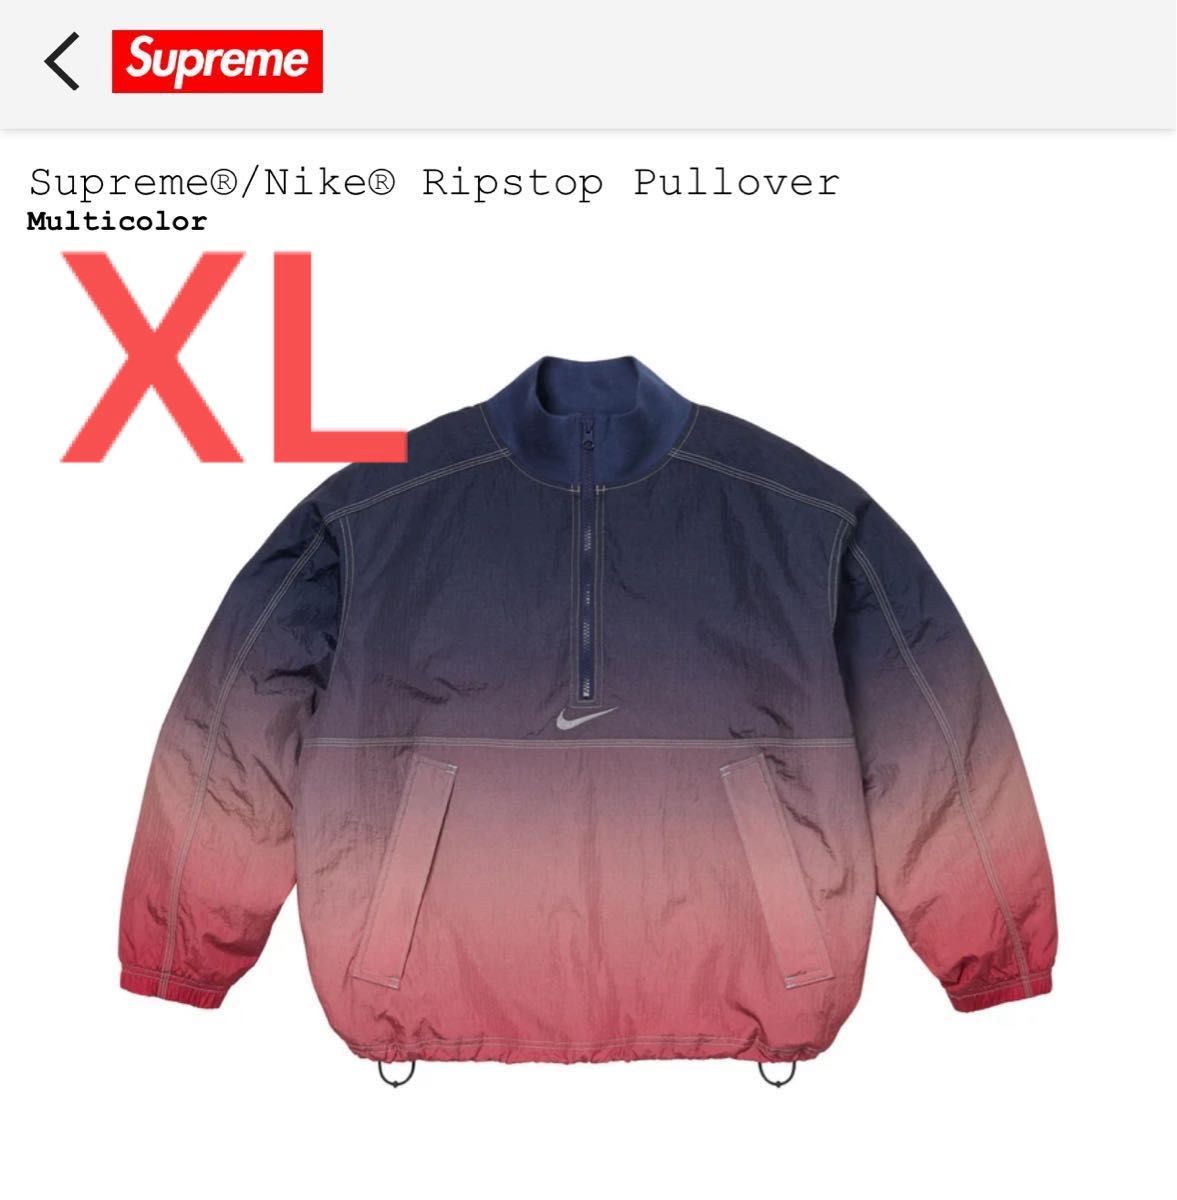 XL Supreme x Nike Ripstop Pullover "Multicolor"